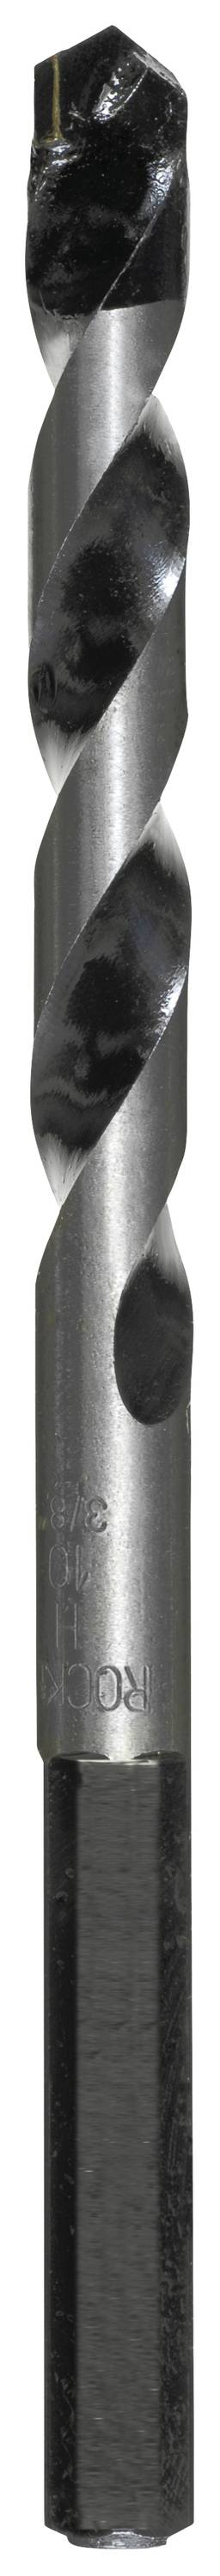 KWB 050660 Hartmetall Beton-Spiralbohrer 6 mm Gesamtlänge 120 mm Zylinderschaft 1 Stück (050660)